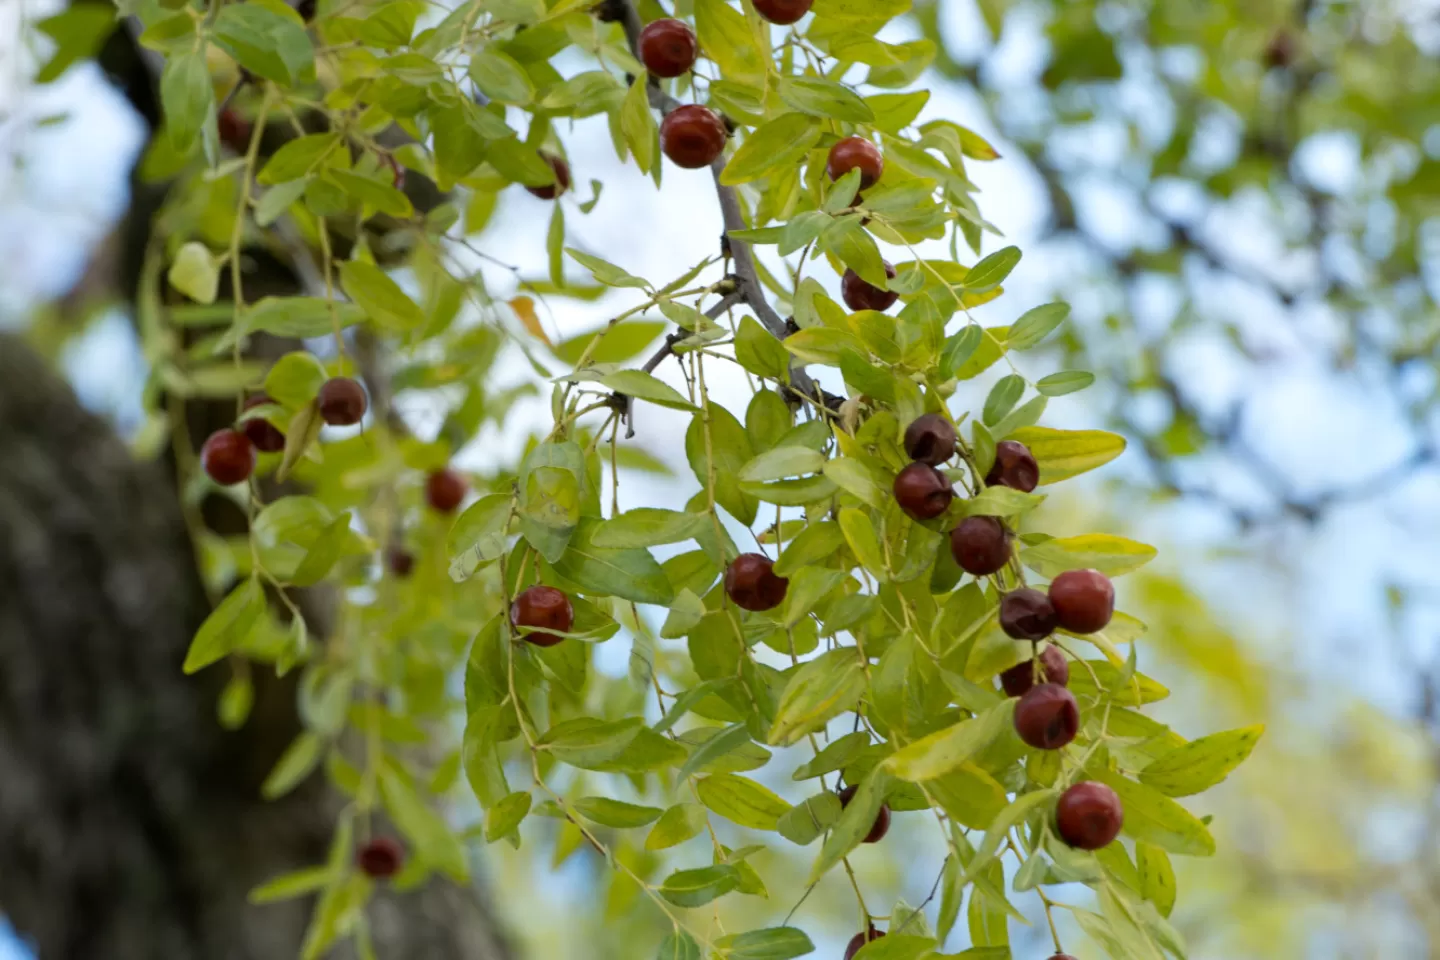 Fruit of the jujube tree.